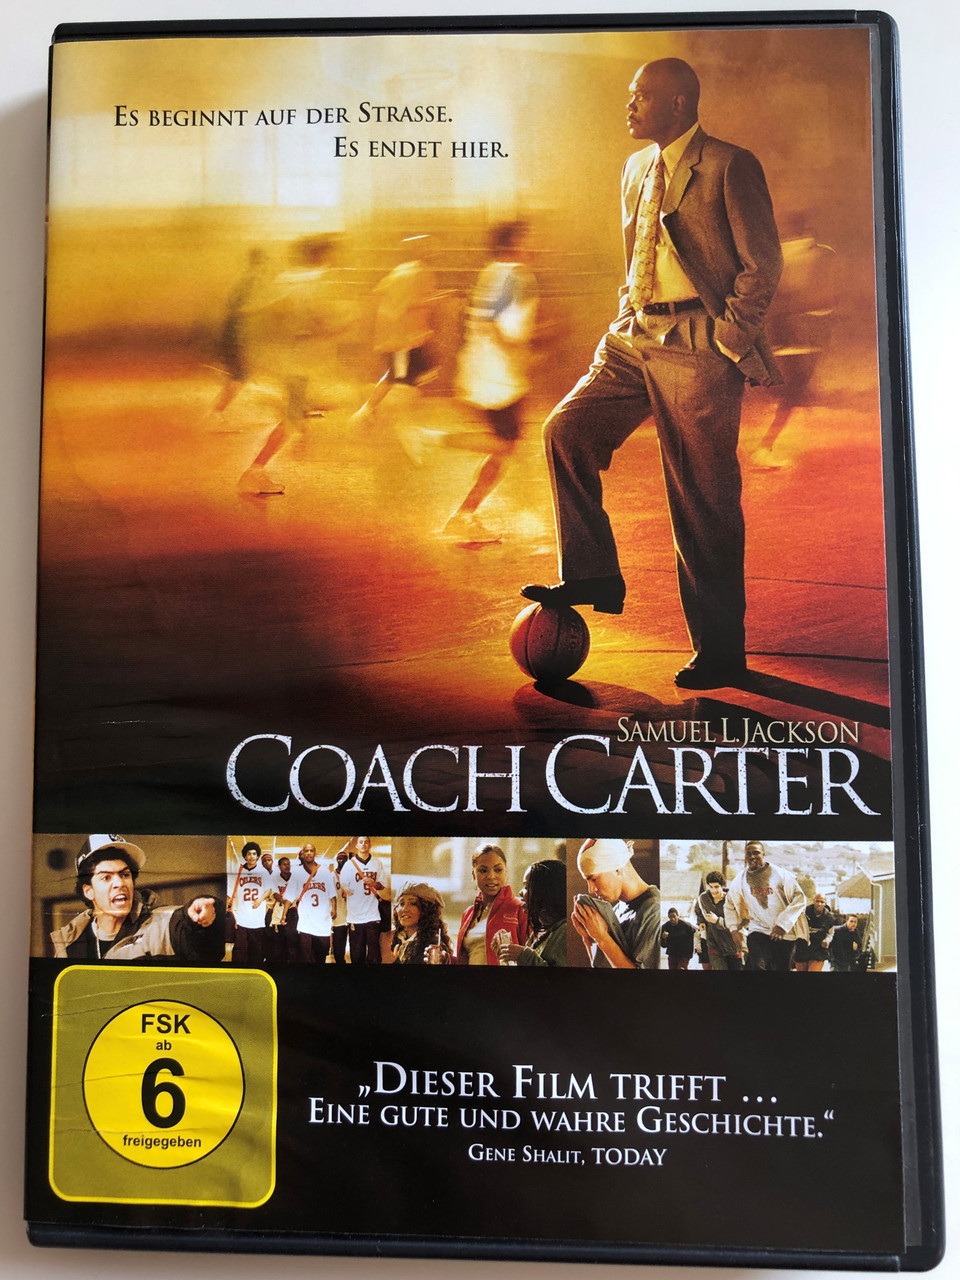 Coach Carter DVD 2005 Es Beginnt auf der strasse. Es endet Hier / Directed  by Thomas Carter / Starring: Samuel L. Jackson, Ashanti, Rob Brown,  Channing Tatum, Rick Gonzalez - bibleinmylanguage